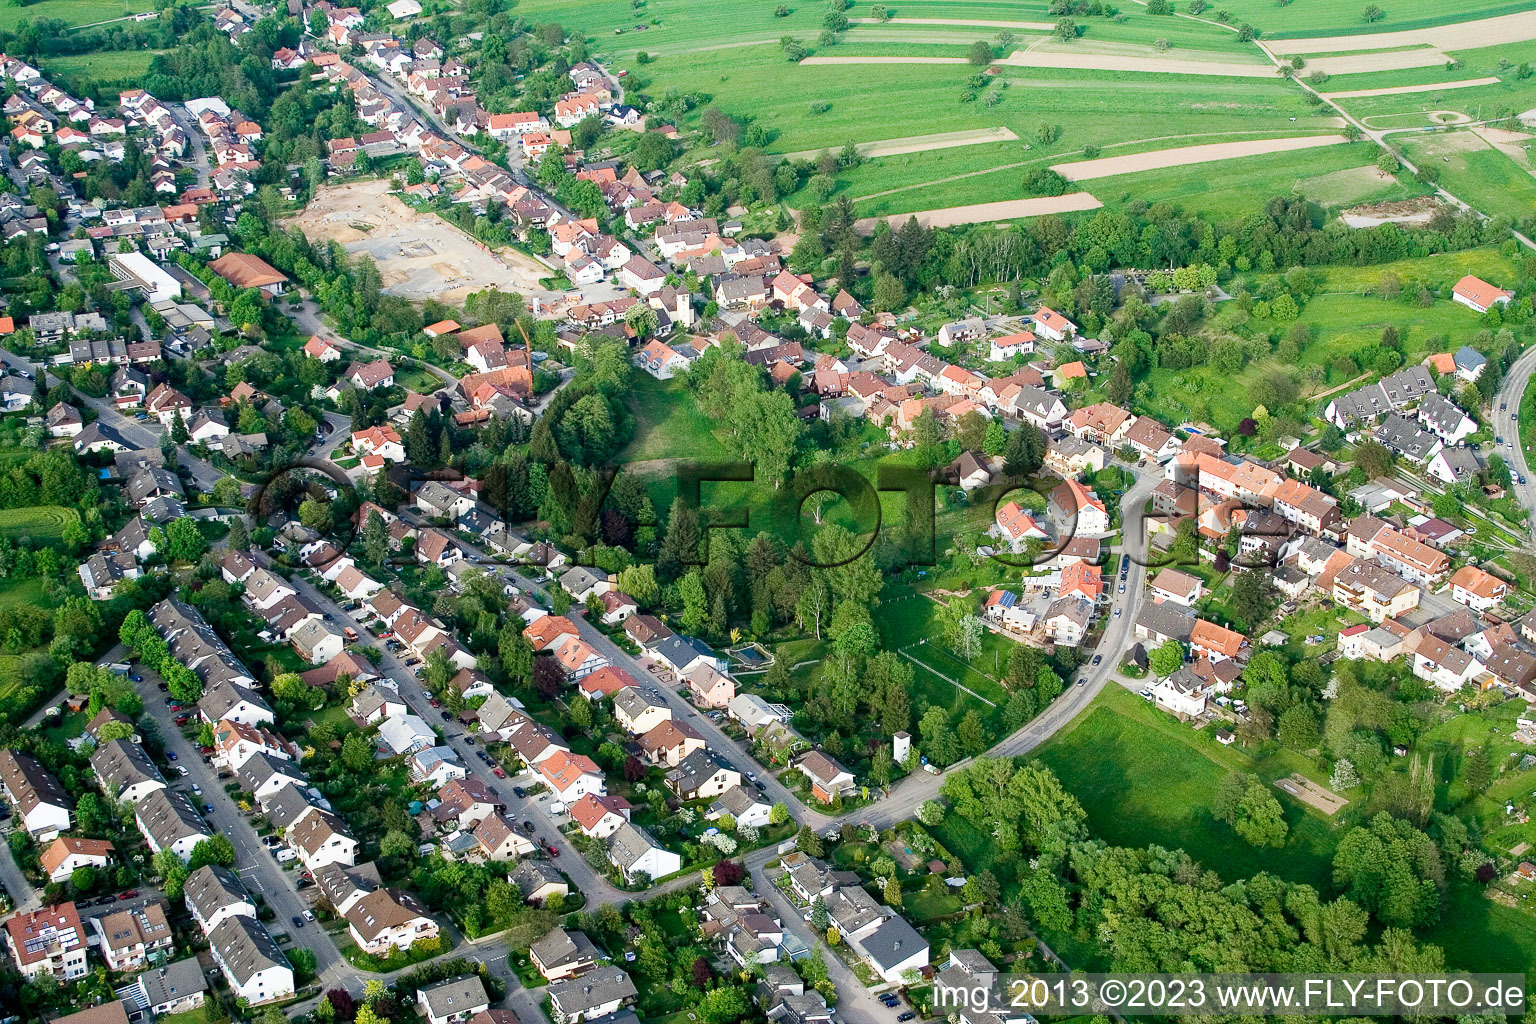 Luftbild von Ortsteil Auerbach in Karlsbad im Bundesland Baden-Württemberg, Deutschland